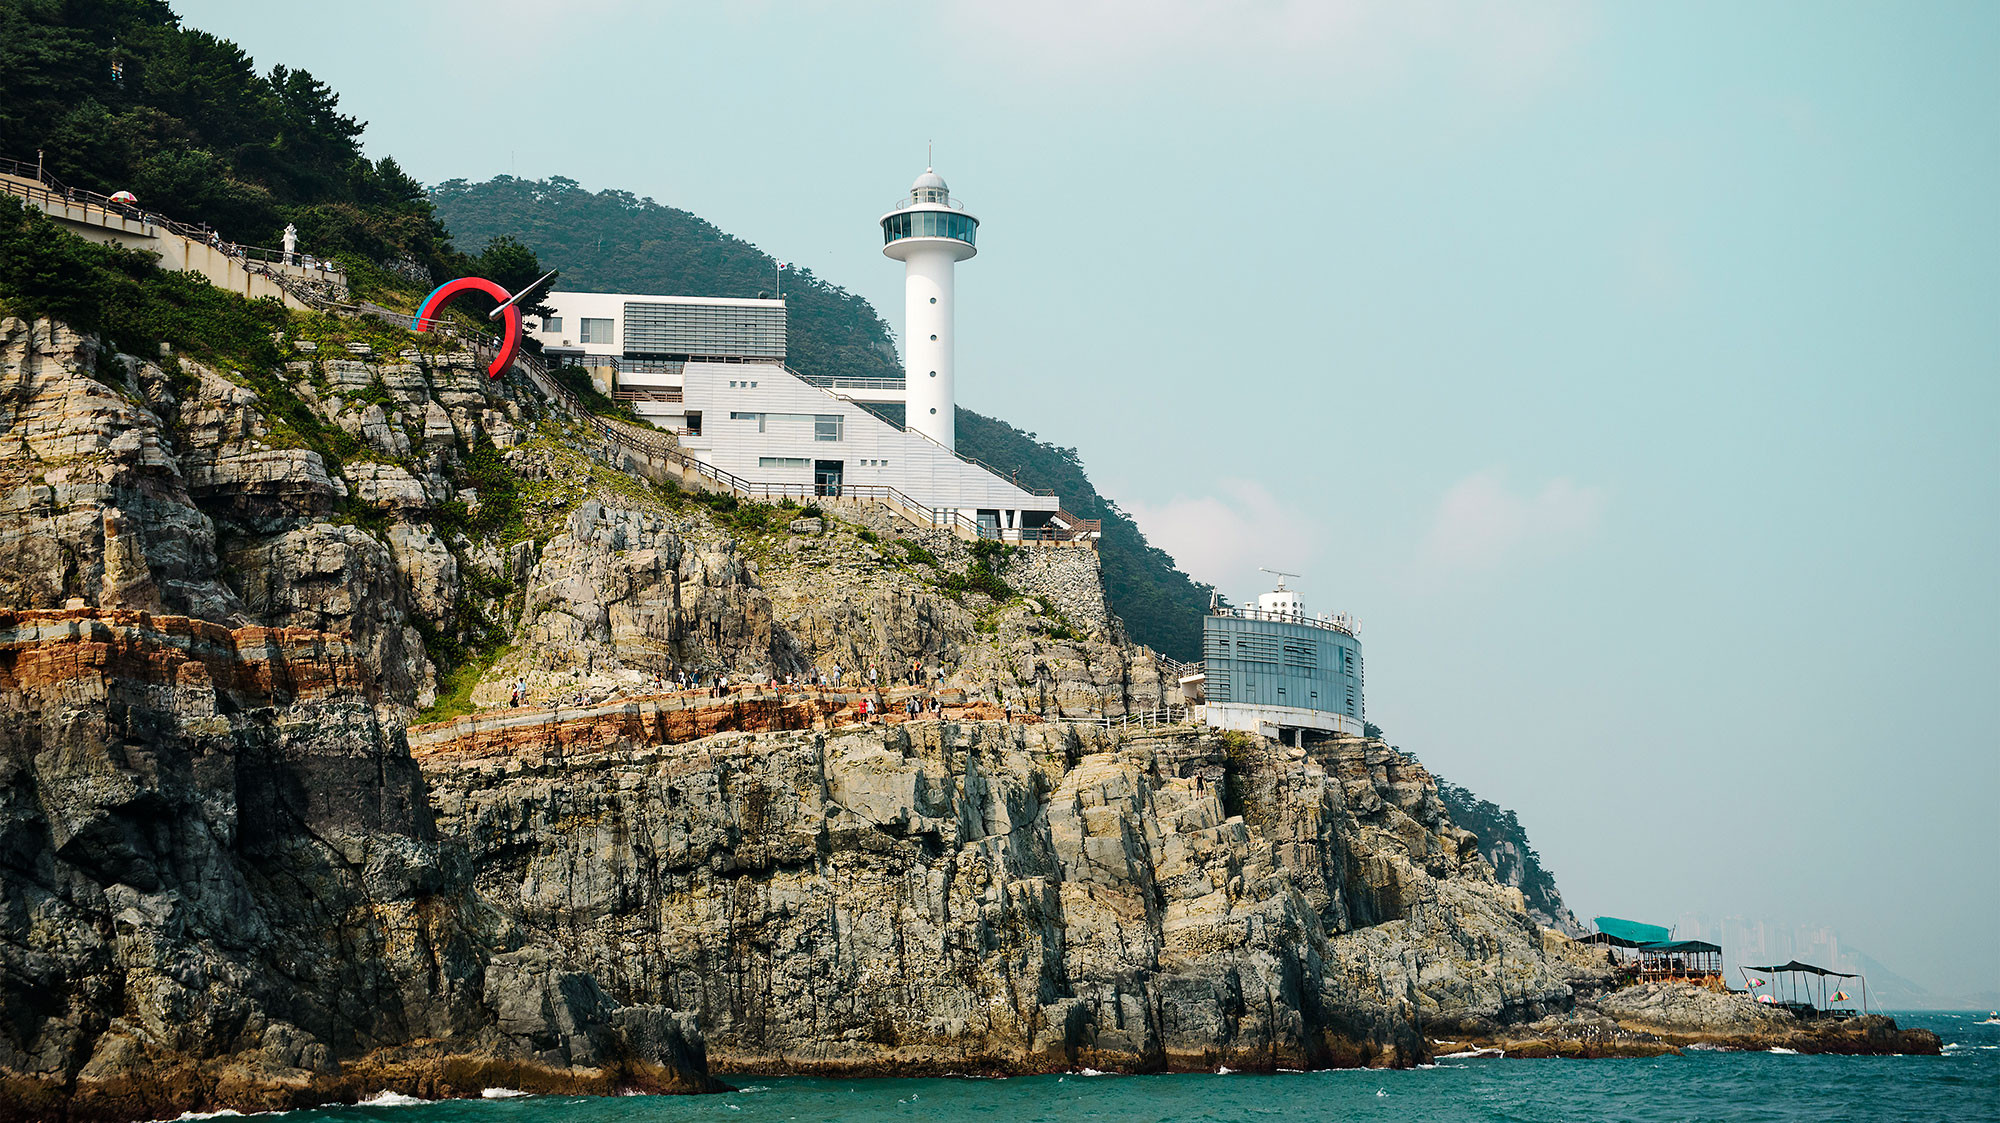 9 điểm du lịch hấp dẫn tại Busan bạn nhất định phải đến - ảnh 6